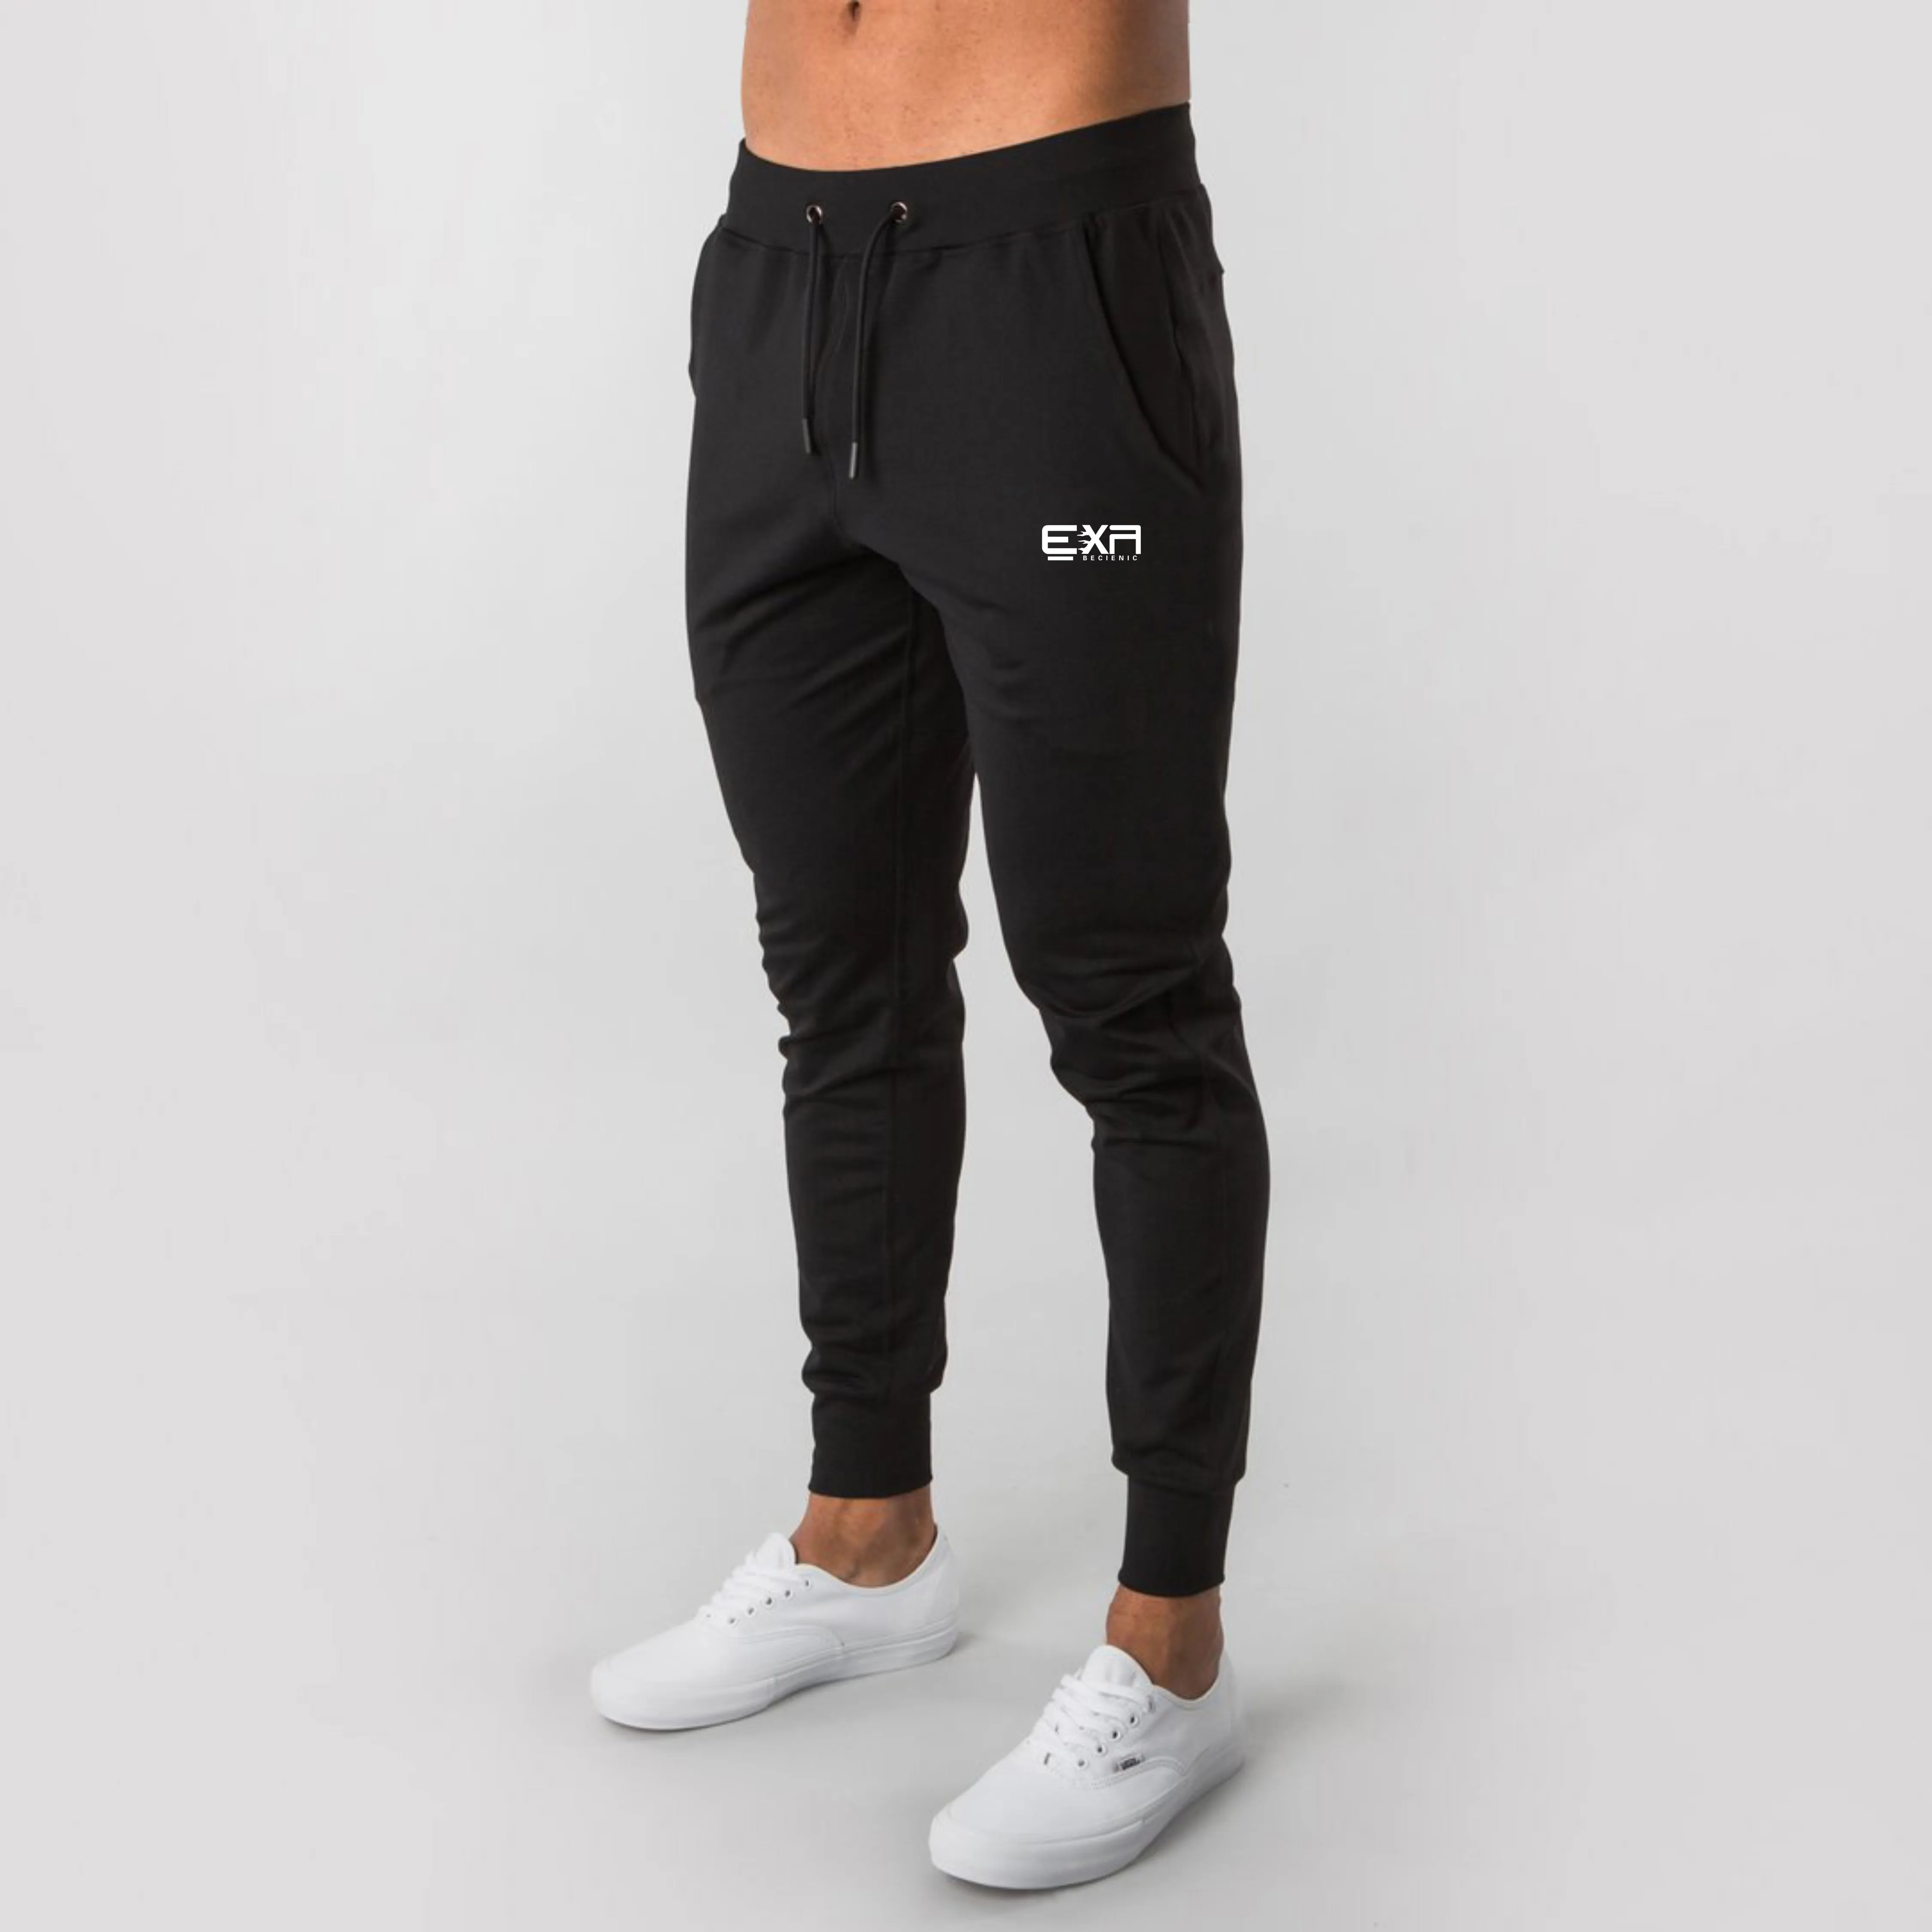 Новый бренд спортивные штаны для мужчин фитнеса джоггеры 2020 летние мужские